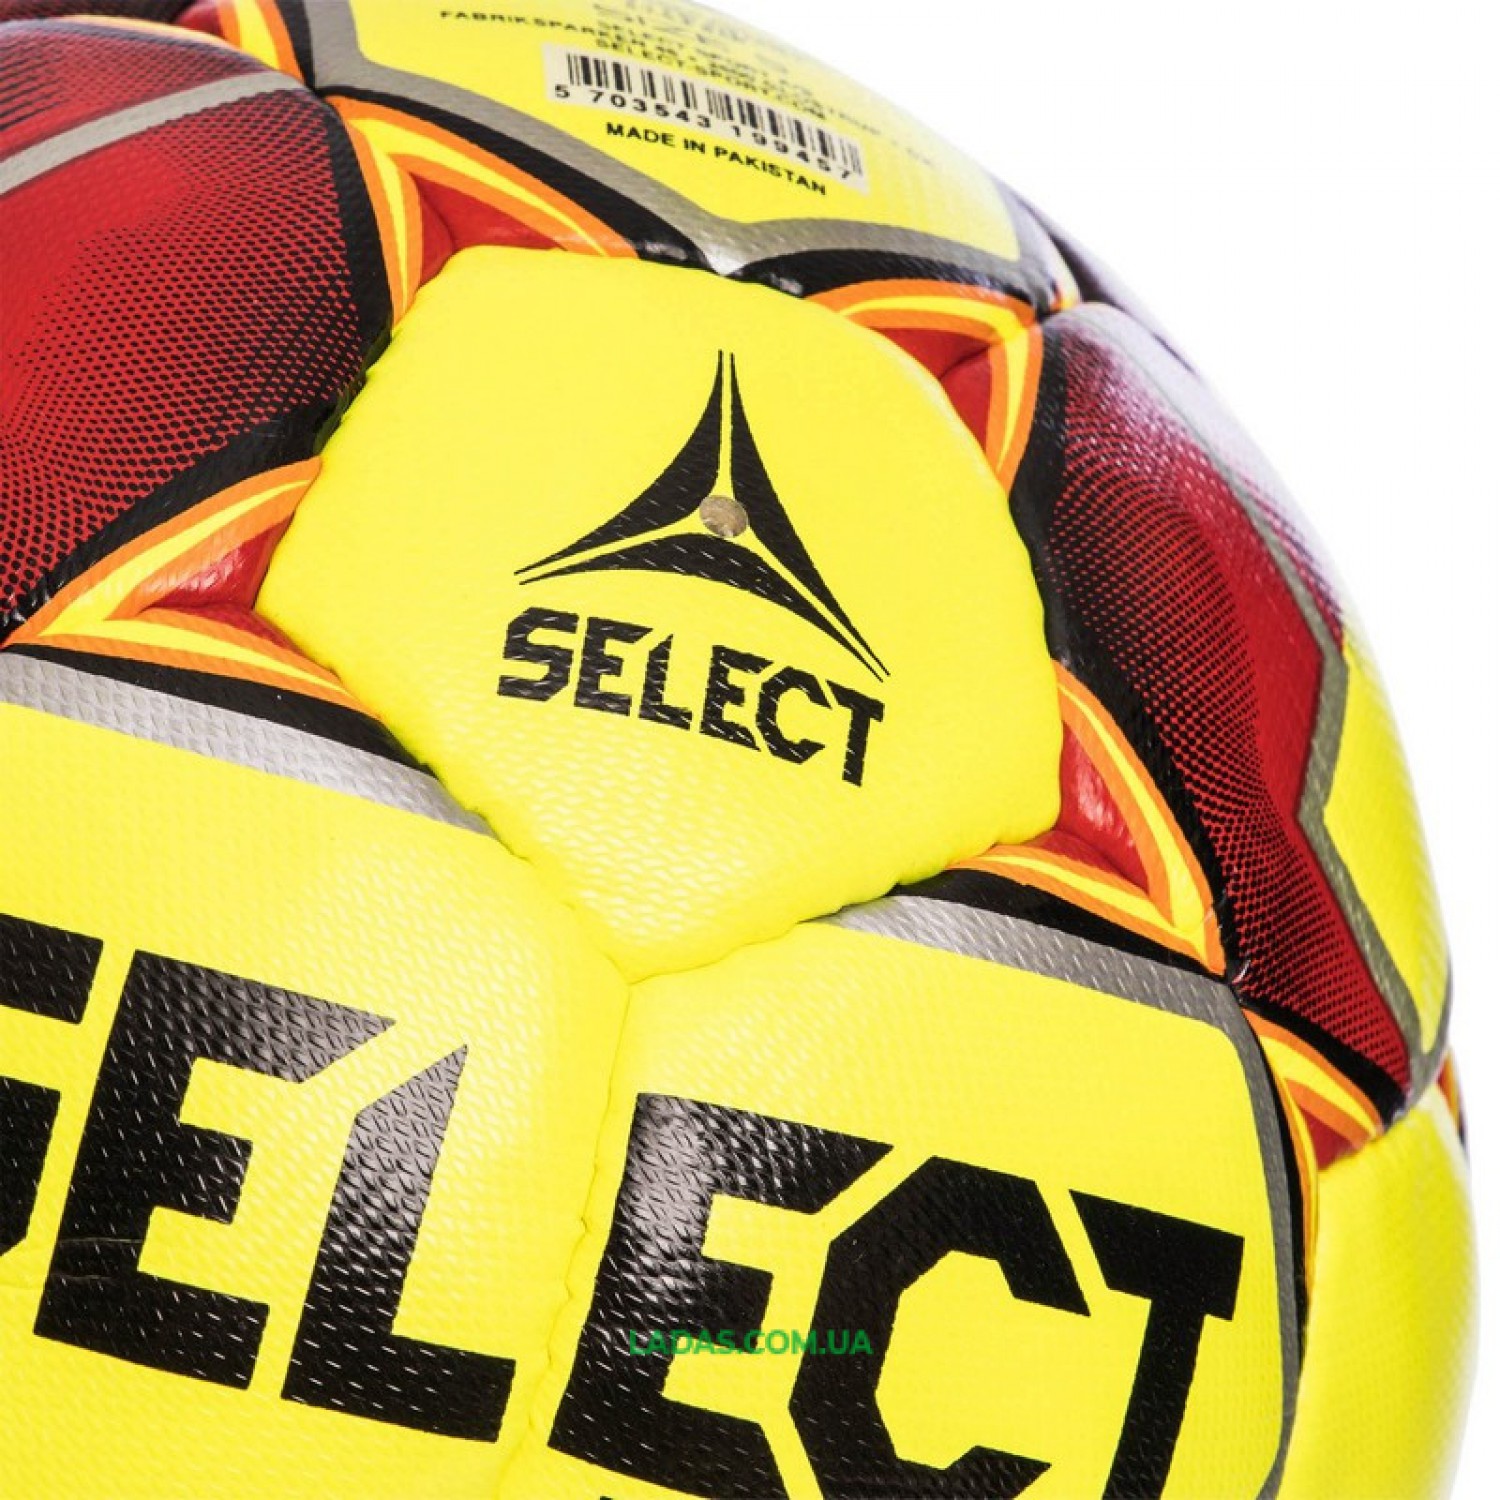 Мяч футбольный №5 SELECT FLASH TURF IMS (FPUS 1500, желто-красный)